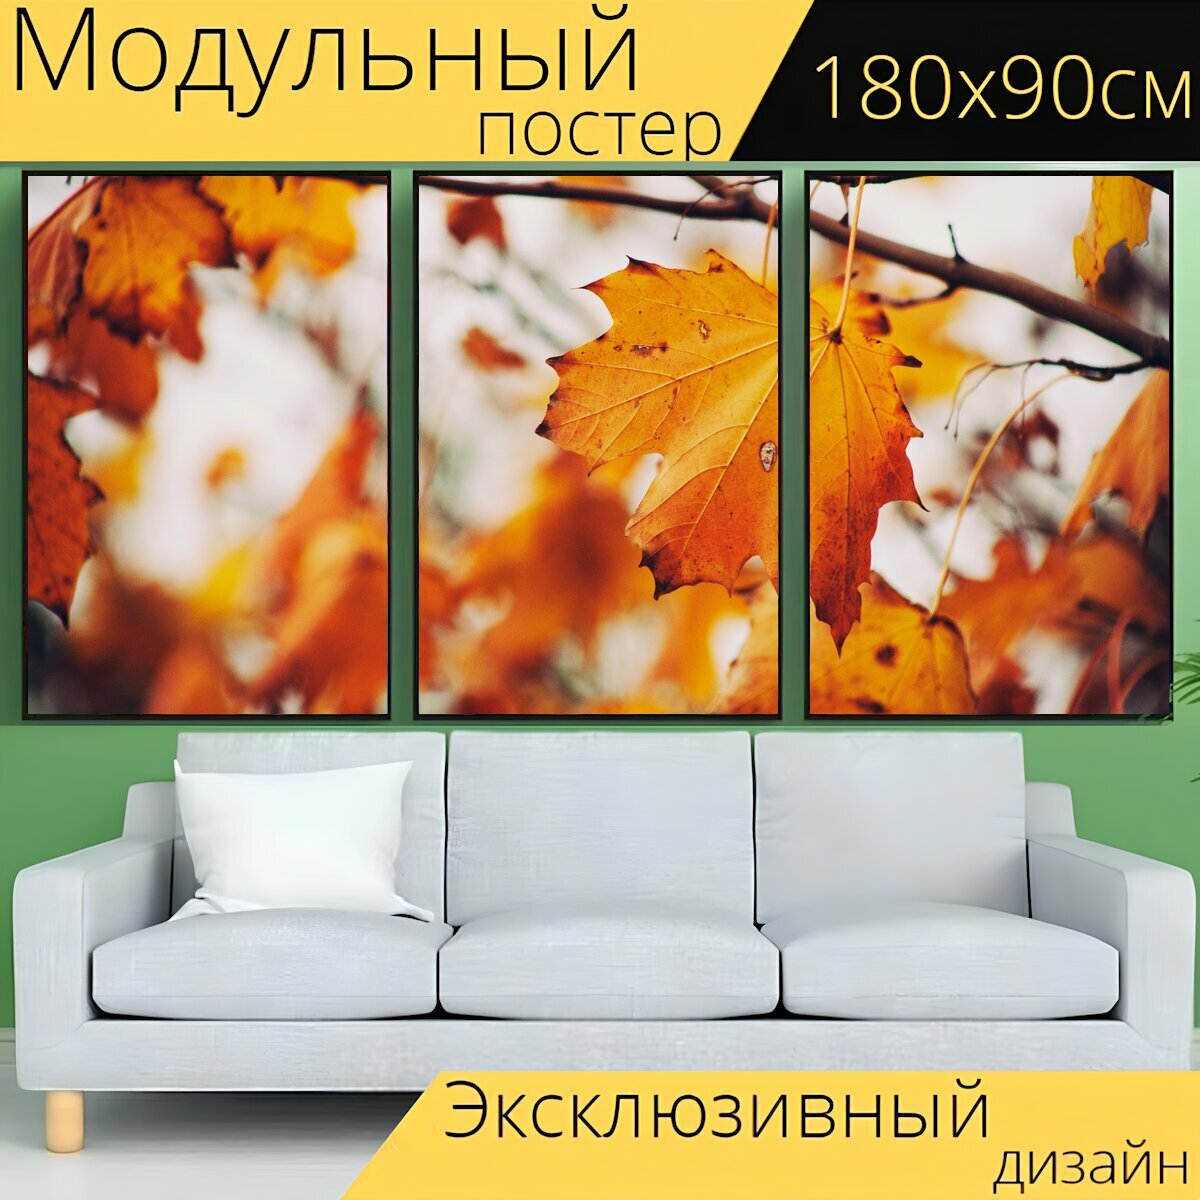 Модульный постер "Осень, листья, падение" 180 x 90 см. для интерьера